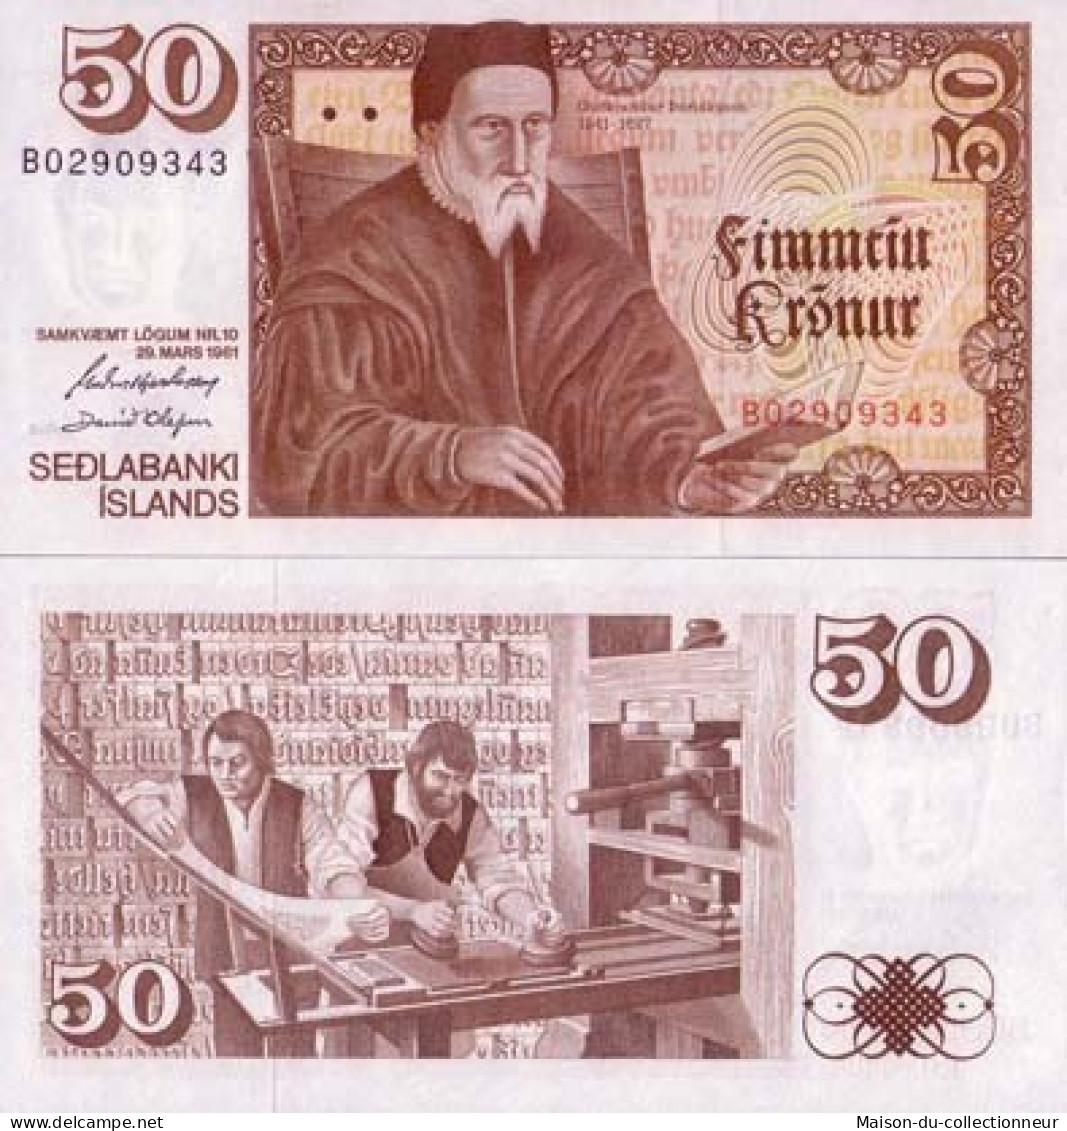 Billets Banque Islande Pk N° 49 - 50 Kronur - Iceland